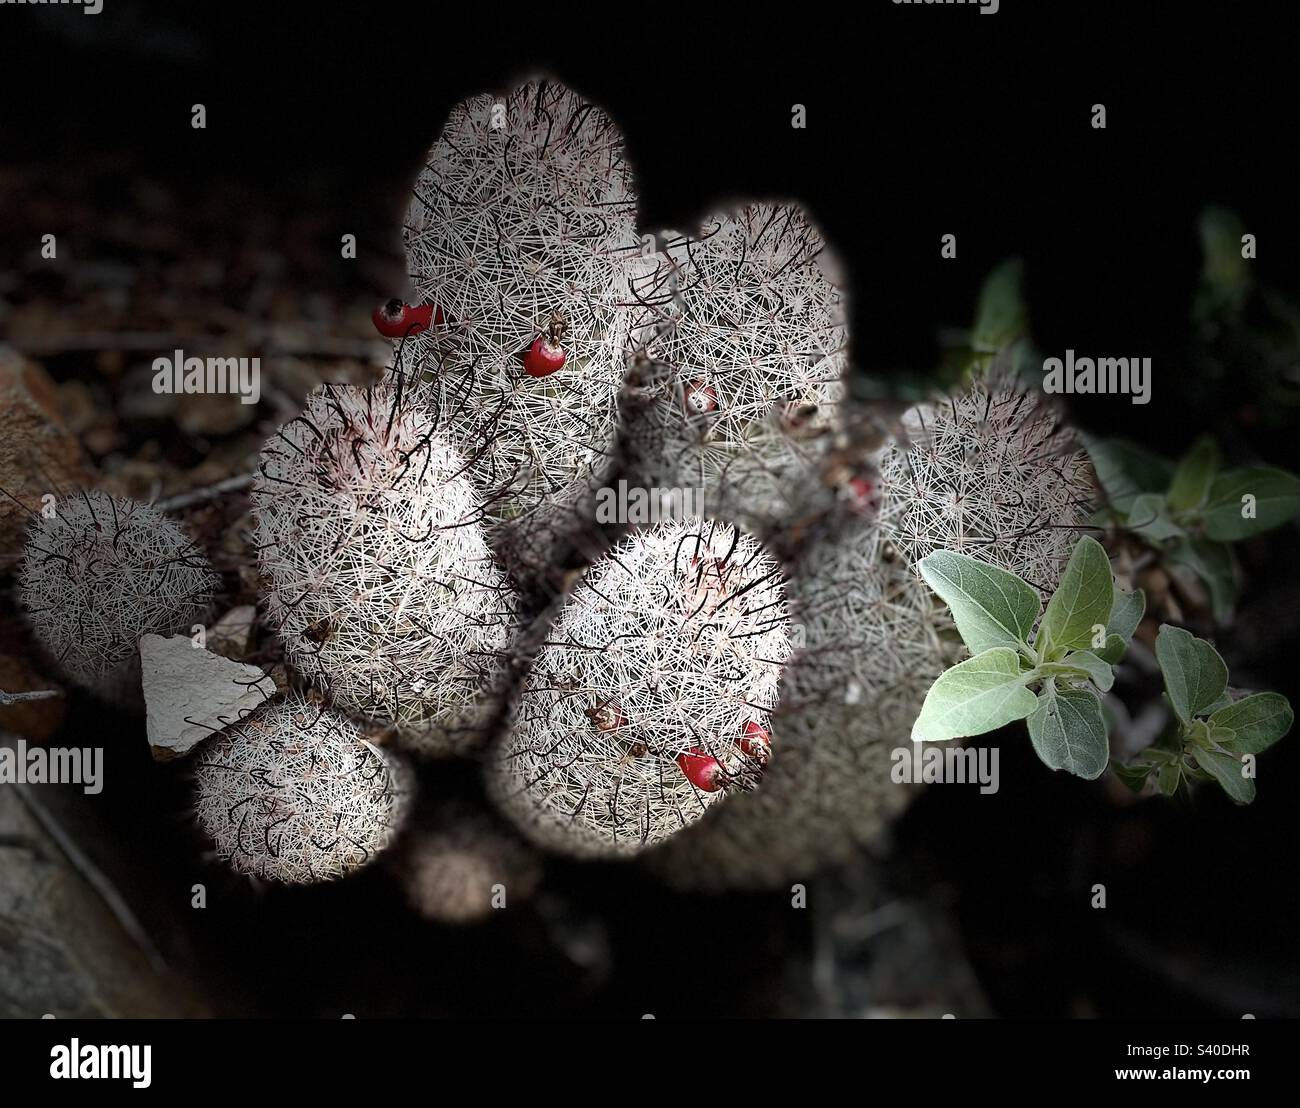 Mammillaria fructífera, cactus pezón, cactus pincushion, modo retrato, iluminación de escenario, Phoenix Mountain Preserve, Arizona Foto de stock